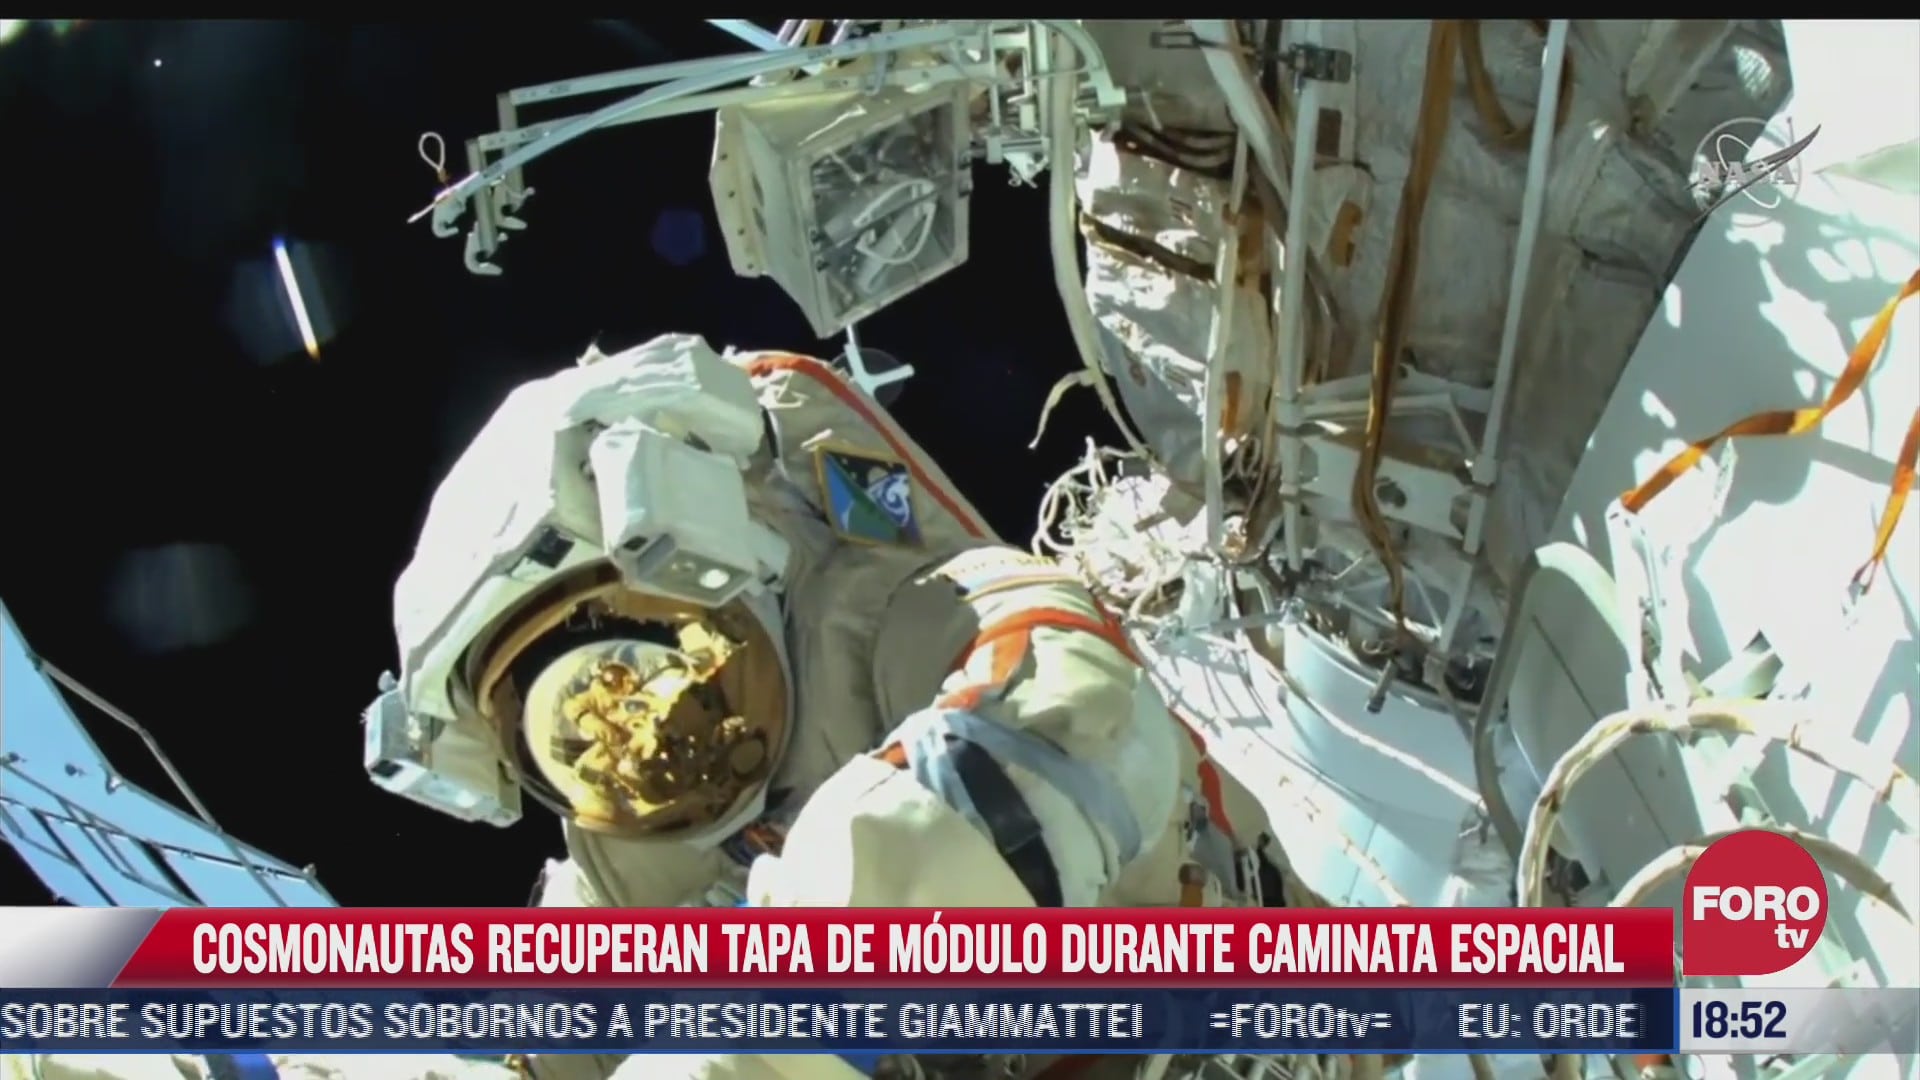 cosmonauta recupera tapa de modulo durante caminata espacial